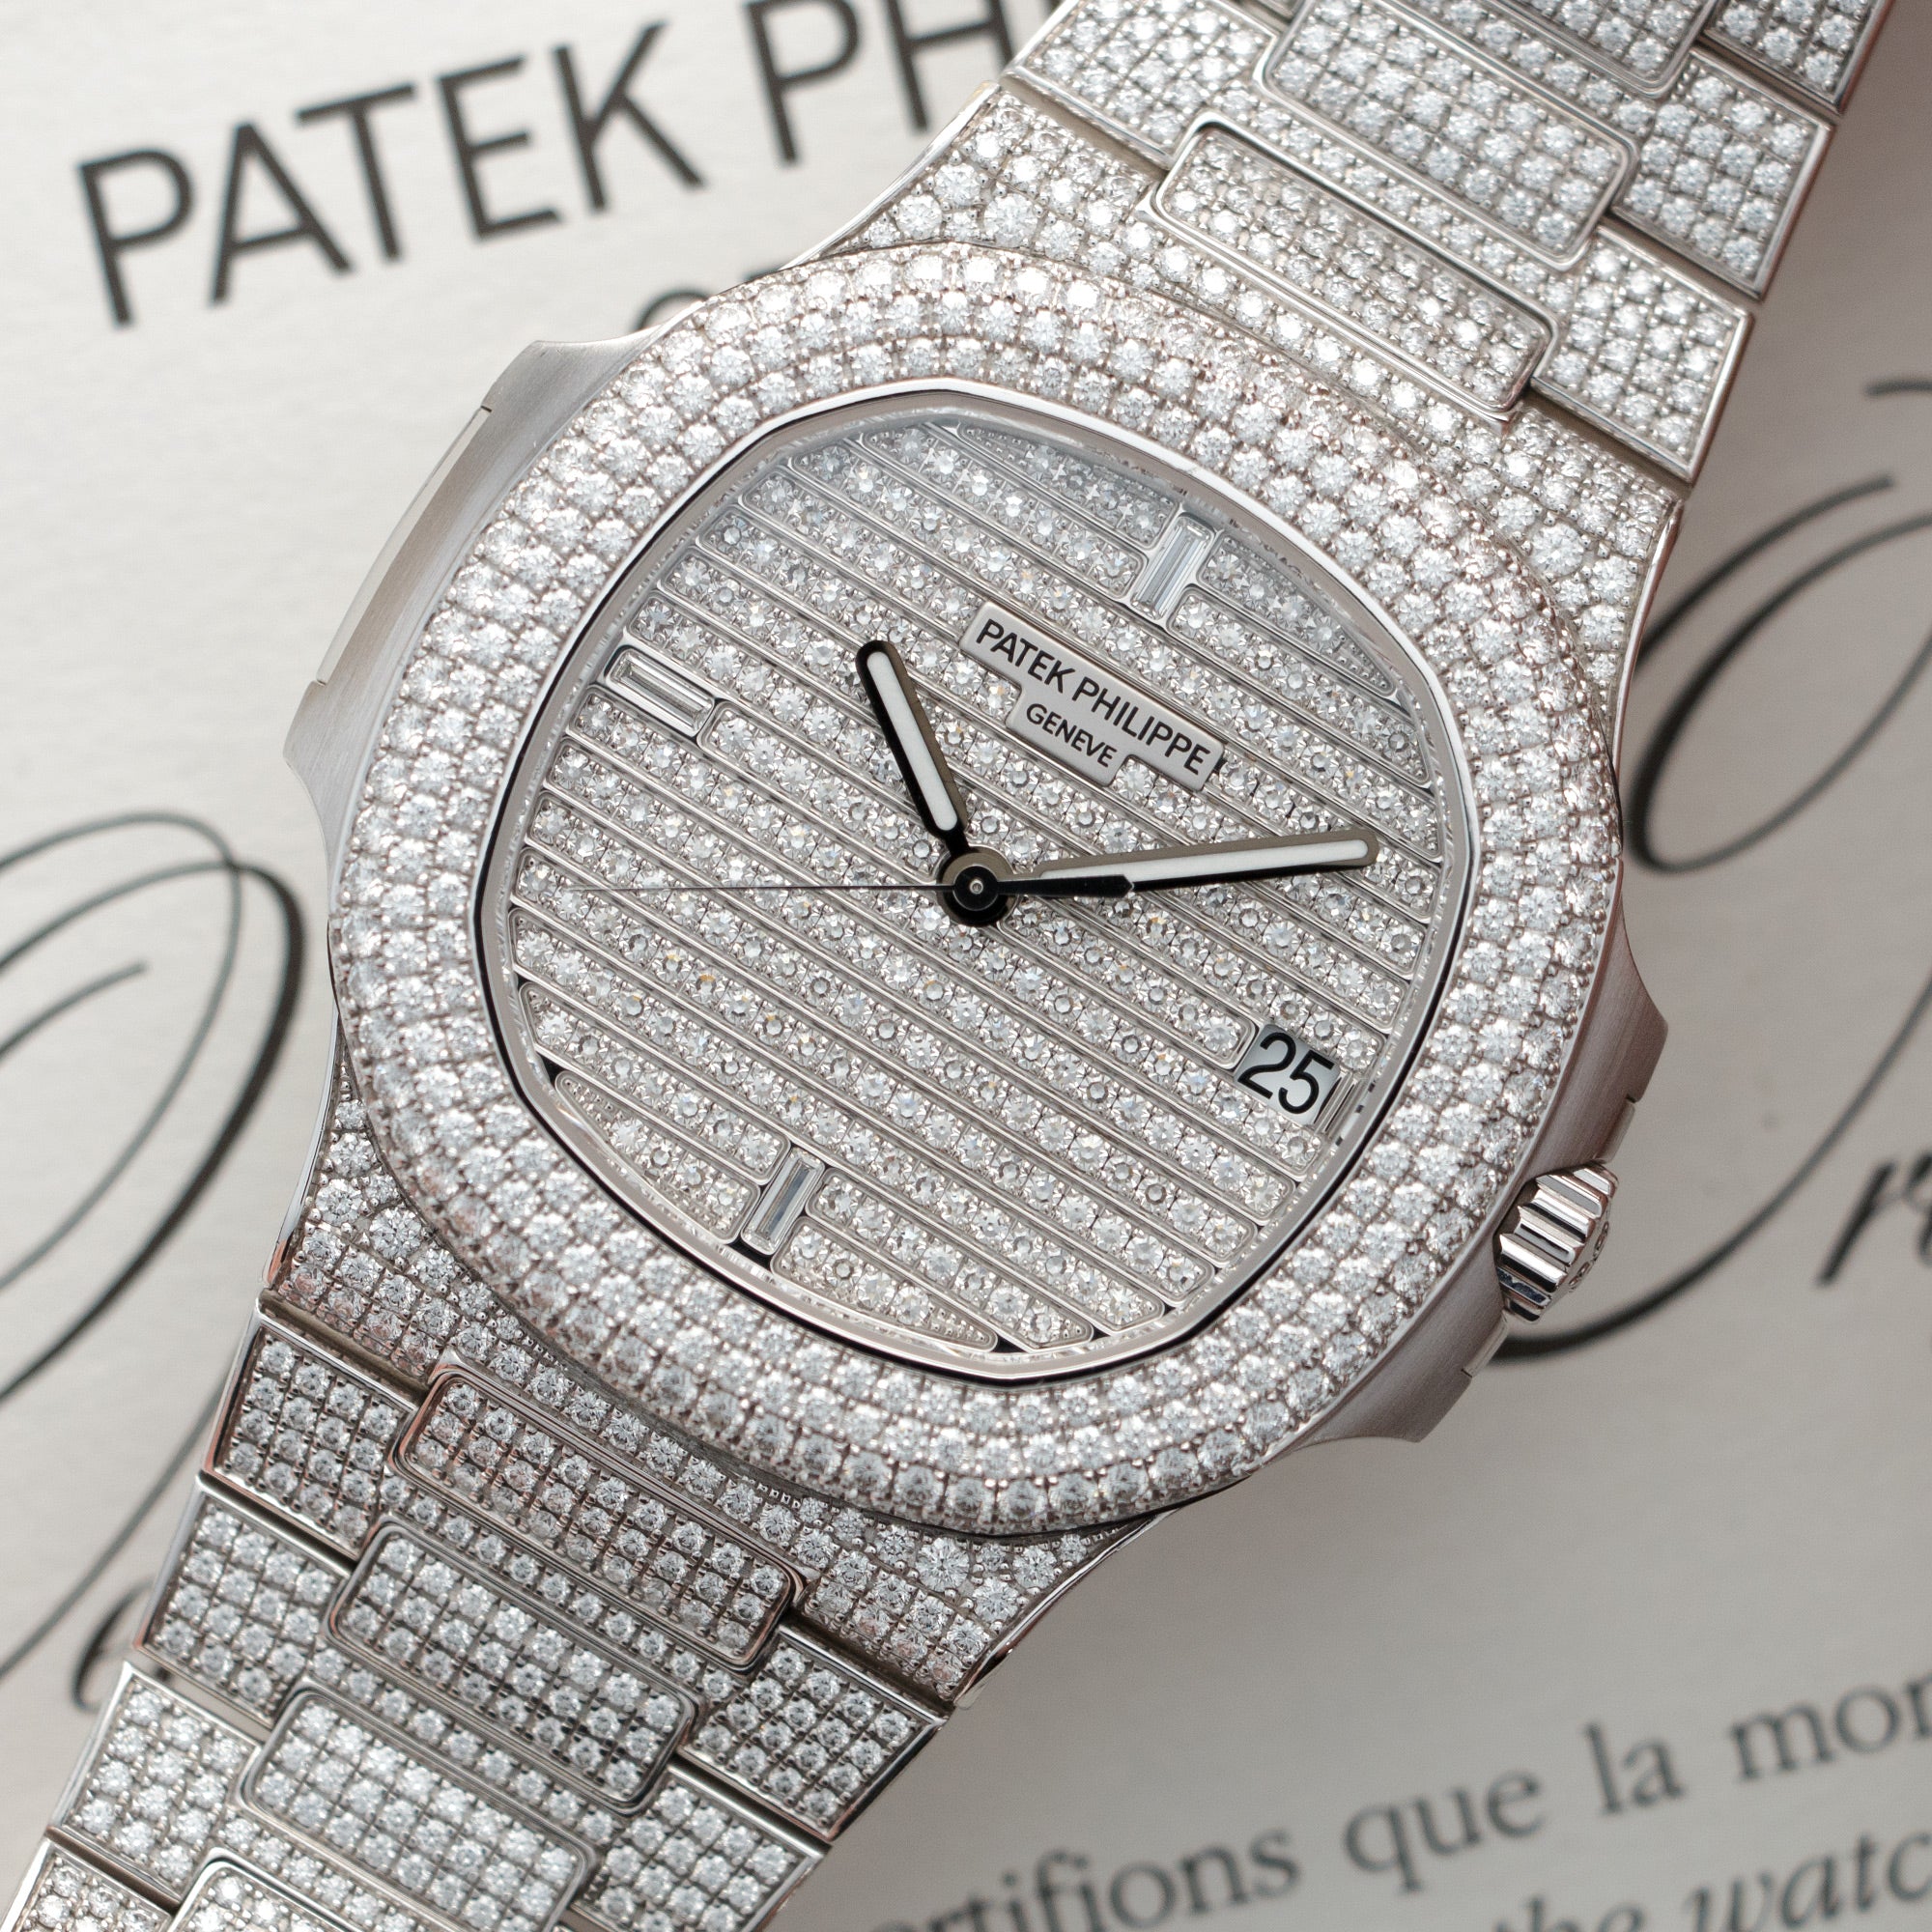 Patek Philippe - Patek Philippe White Gold Nautilus Diamond Watch Ref. 5719 - The Keystone Watches